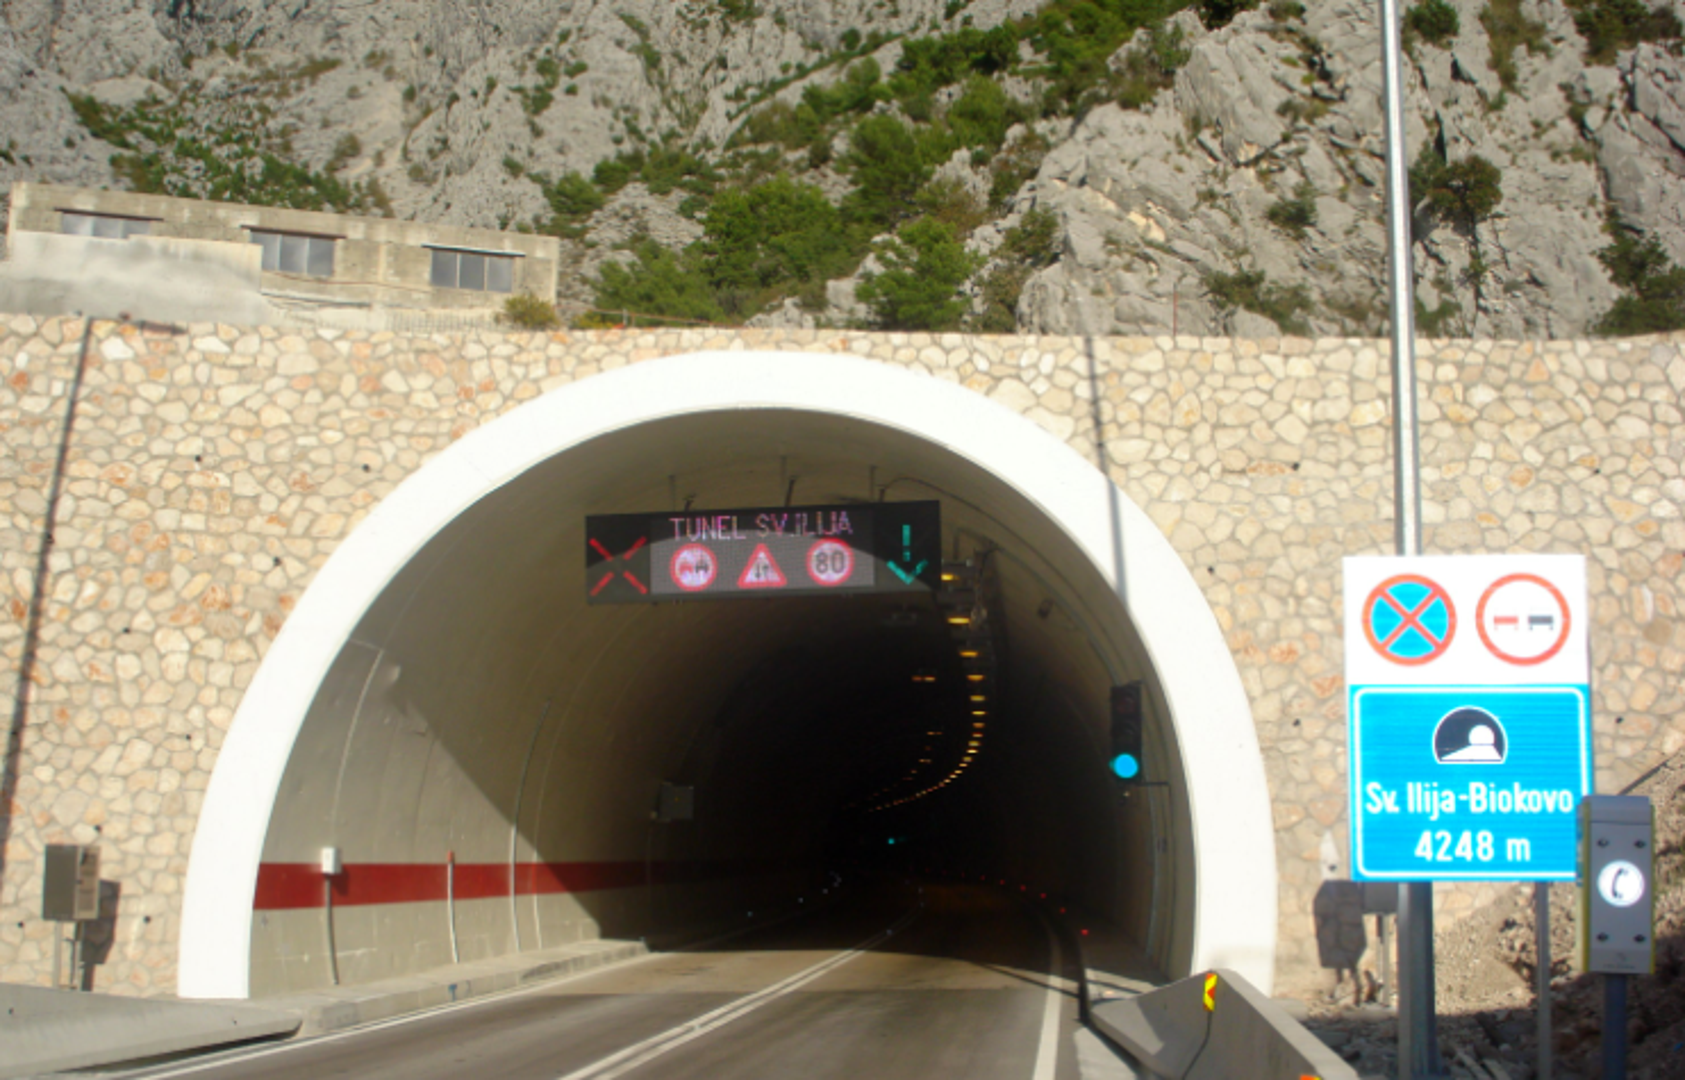 4. Tunel Sveti Ilija, 4.248 metara: Tunel Sveti Ilija, koji se proteže 4248 metara kroz planinski masiv Biokovo, povezuje priobalna i kopnena područja Splitsko-dalmatinske županije. To je četvrti najduži tunel u Hrvatskoj i prvi europski cestovni tunel u krškom masivu. Izgradnja je započela 2008. godine, a dovršena je u siječnju 2010. godine. Radove su izvele dvije tvrtke - Hidroelektra Niskogradnja iz Zagreba i Konstruktor iz Splita.